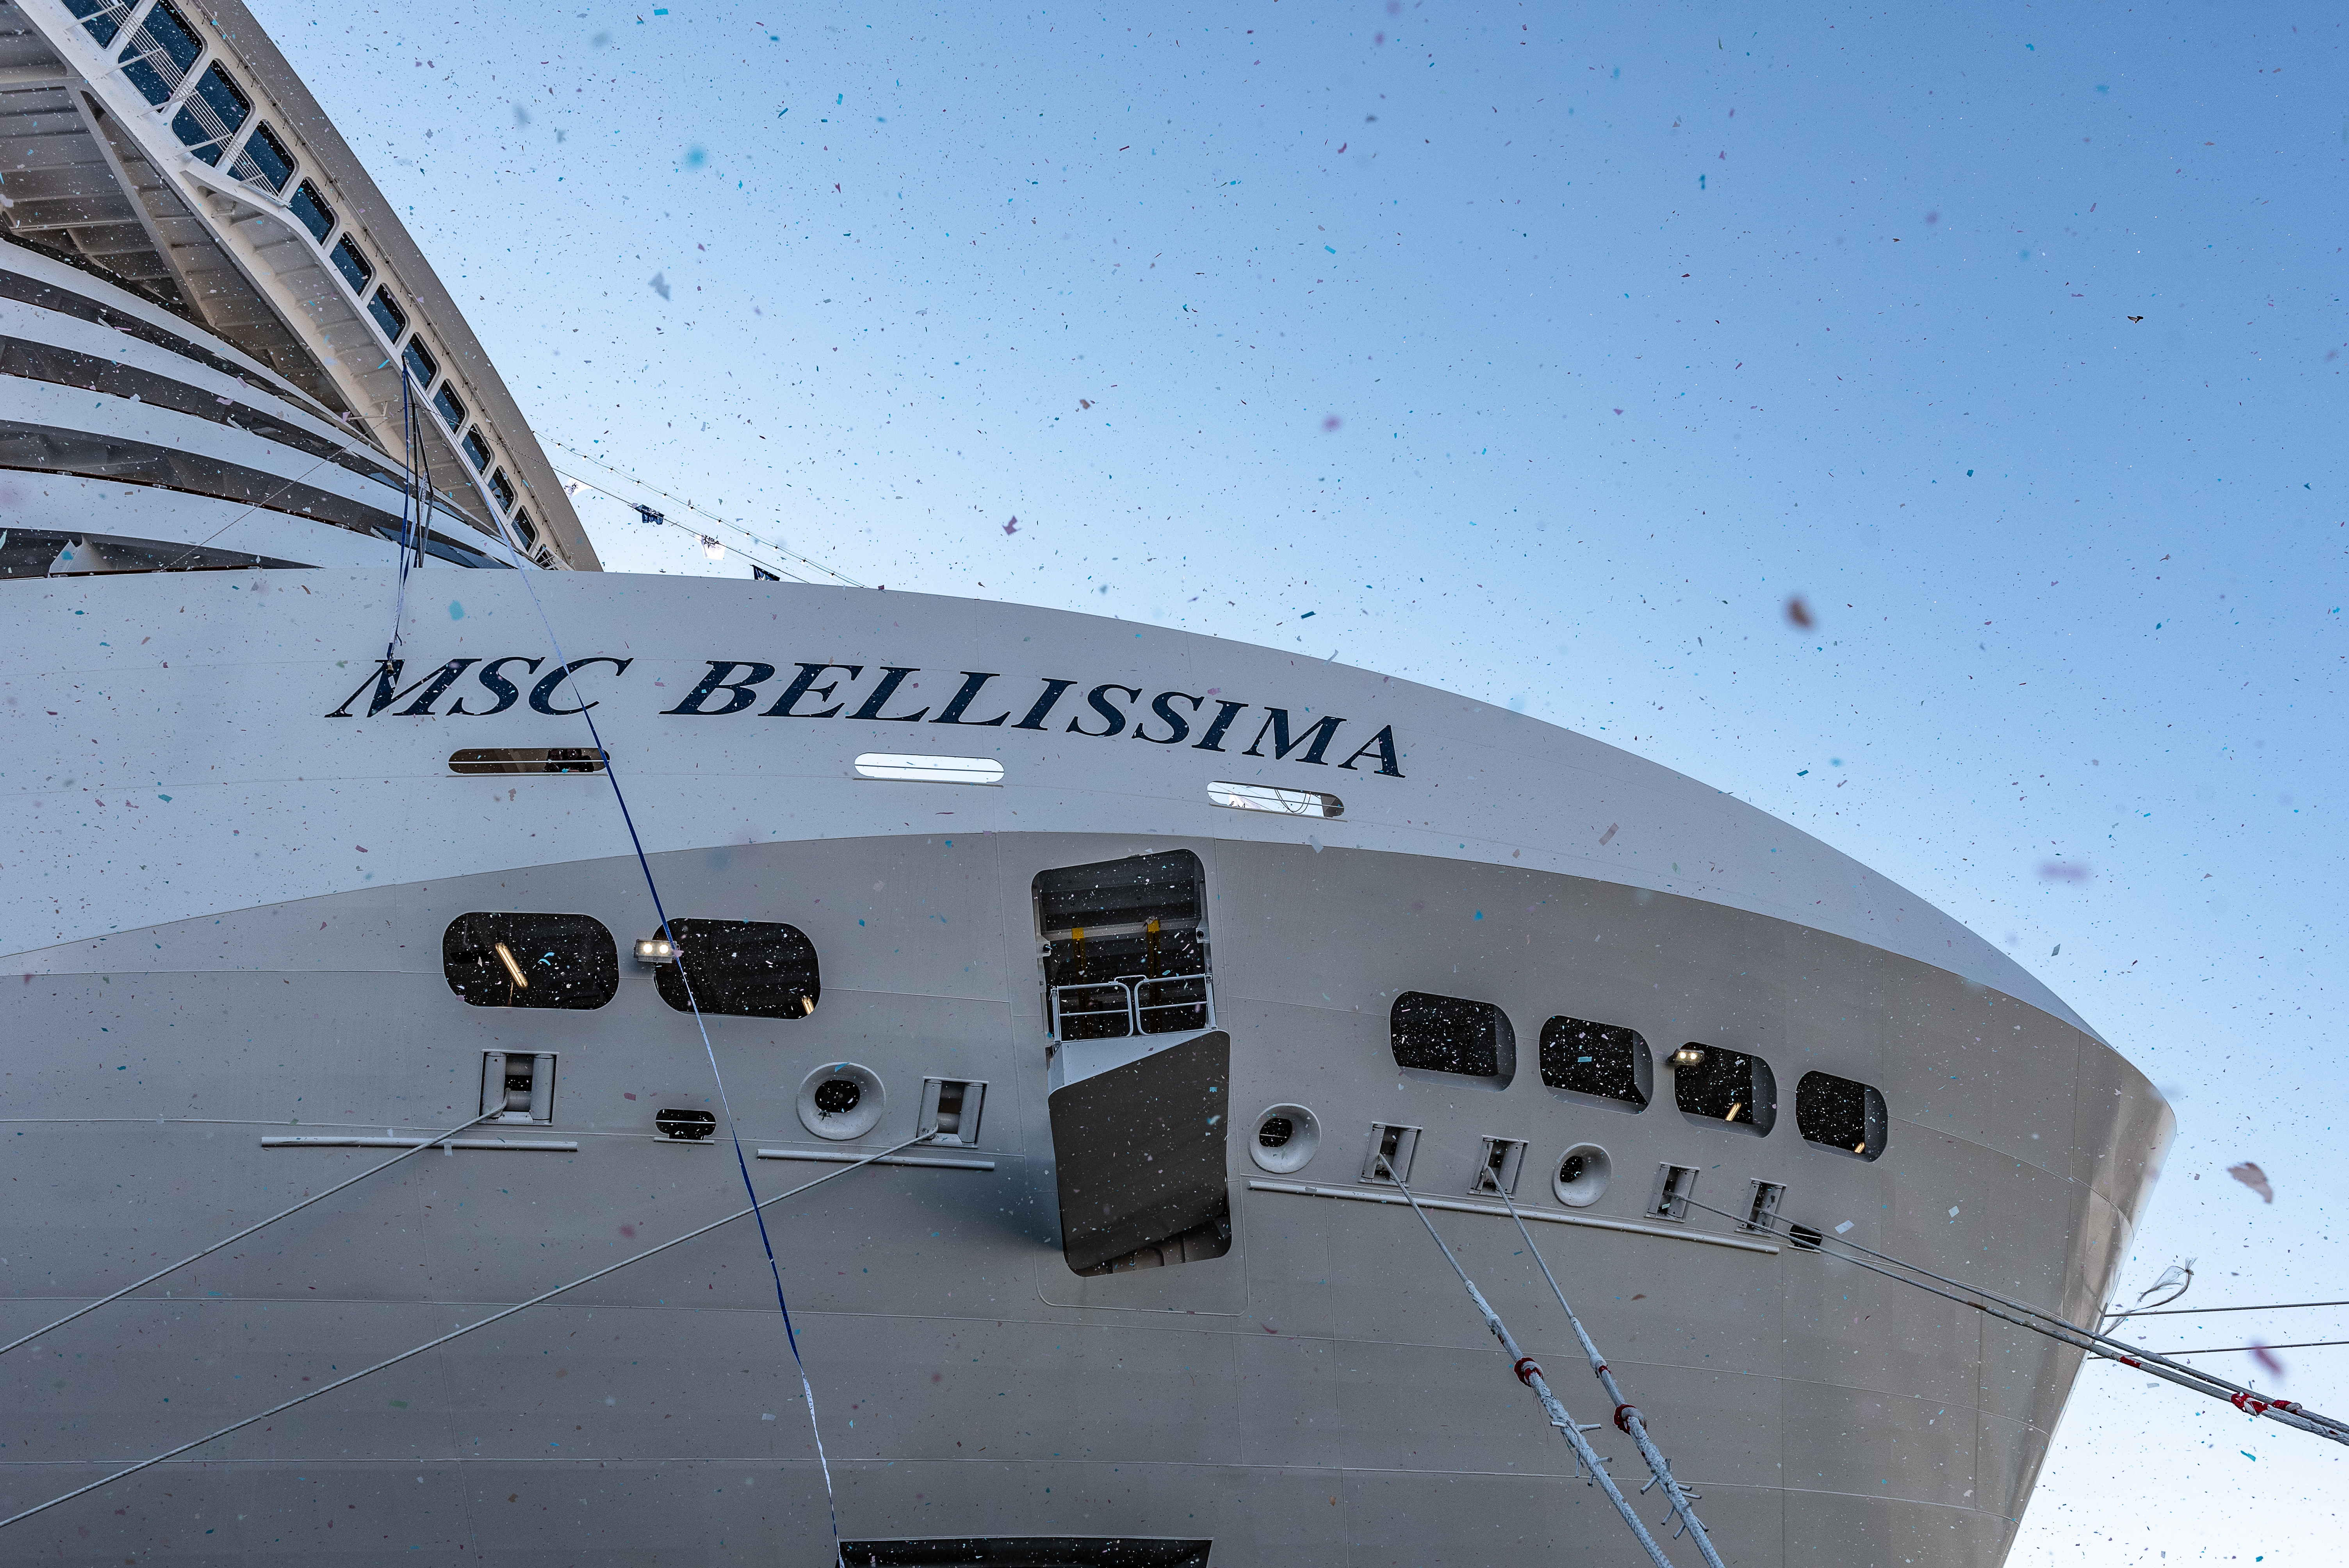 Heute Abend wird MSC Cruises die MSC Bellissima in die Kreuzfahrtflotte des Unternehmens aufnehmen. Das neue Flaggschiff wird mit einer glamourösen und traditionell maritimen Schiffstaufe im Hafen von Southampton gefeiert. Gäste des Events sind Stars, VIPs, Branchenvertreter, internationale Medienvertreter sowie das Topmanagement von MSC Cruises und seinem Mutterkonzern, der MSC Group. Gianluigi Aponte, Reeder und Gründer der MSC Group, wird zusammen mit den Familien Aponte und Aponte-Vago teilnehmen. Sophia Loren wird mit der MSC Bellissima ihr 14. MSC Kreuzfahrtschiff taufen.